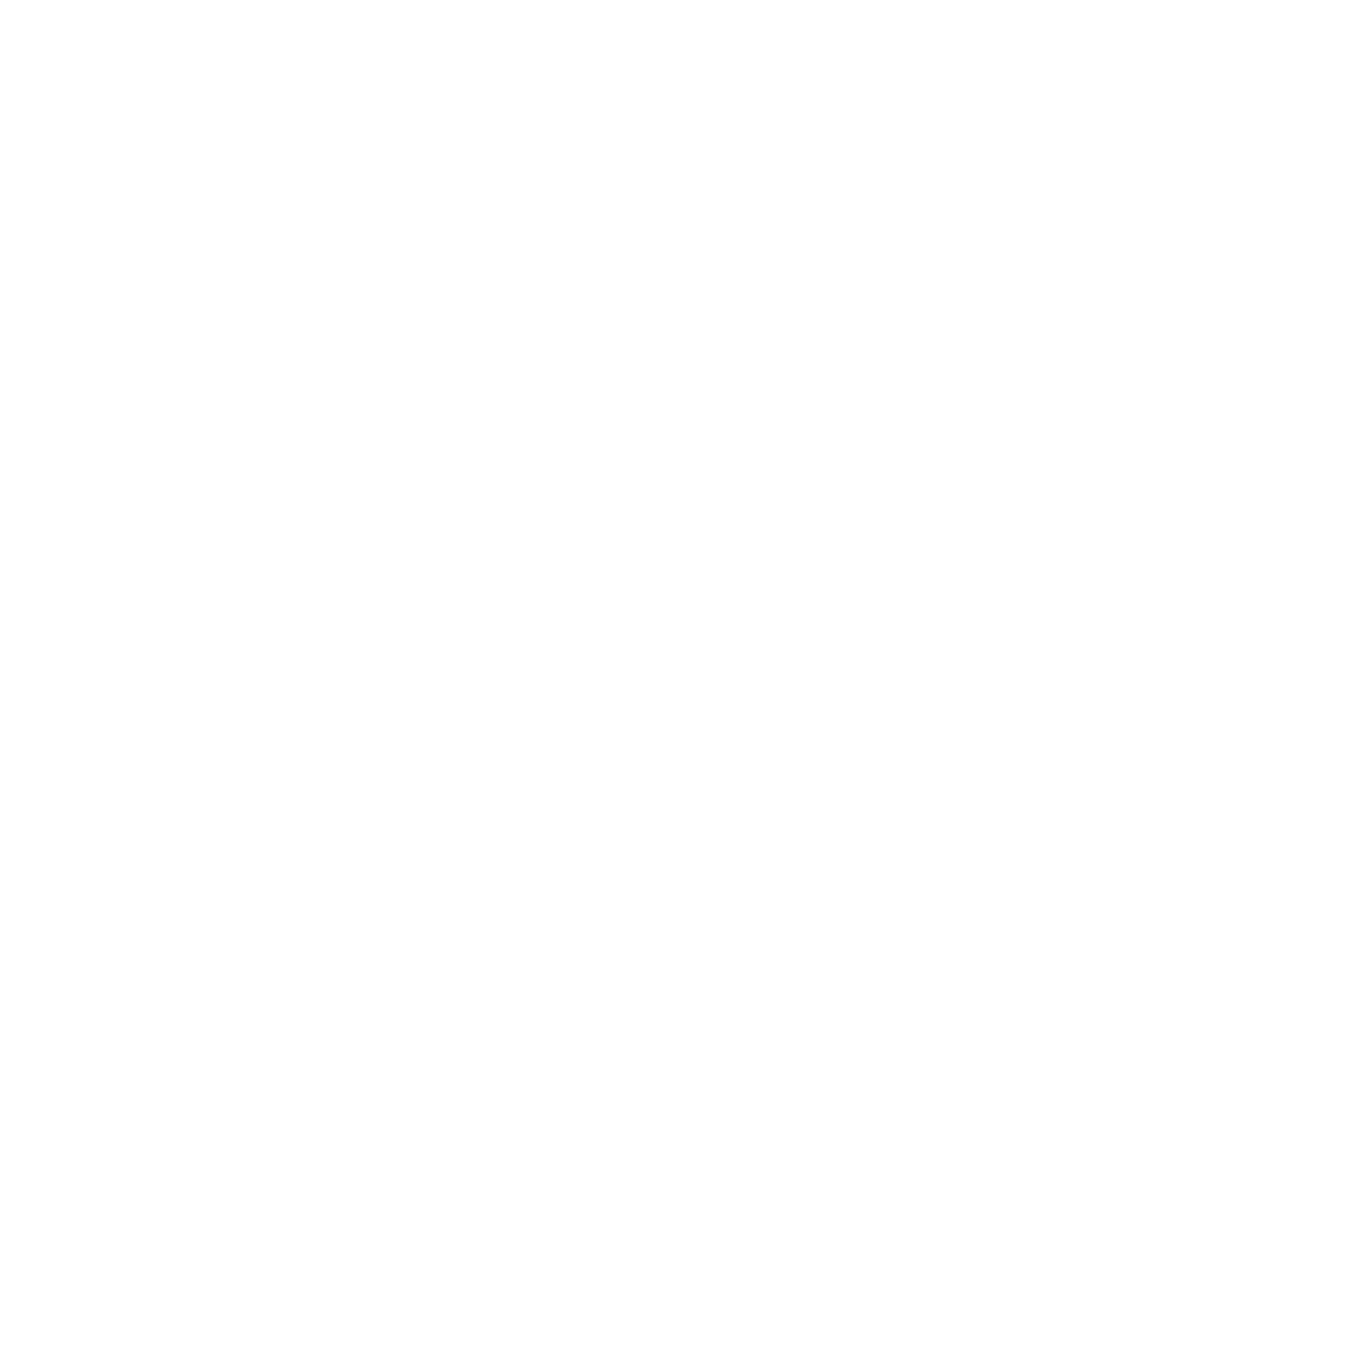 18/10 FILMS